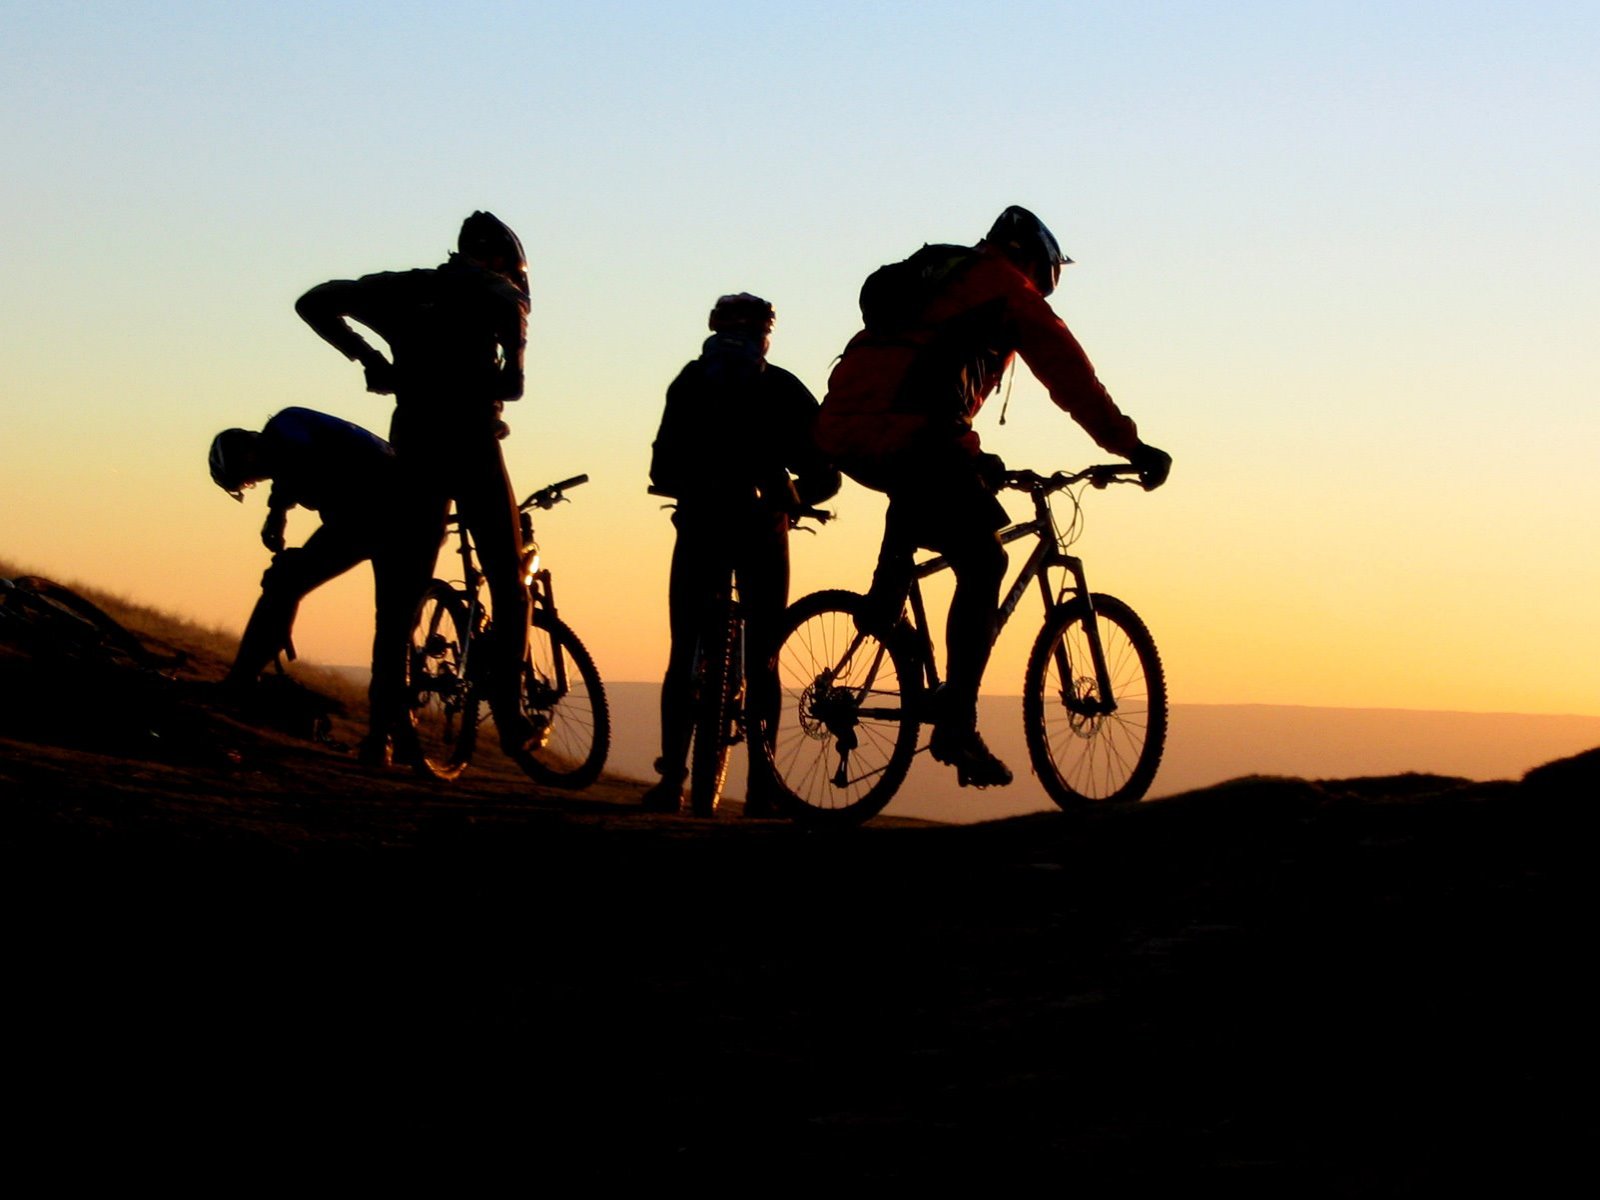 sunset-downhill-mountain-bike-hd